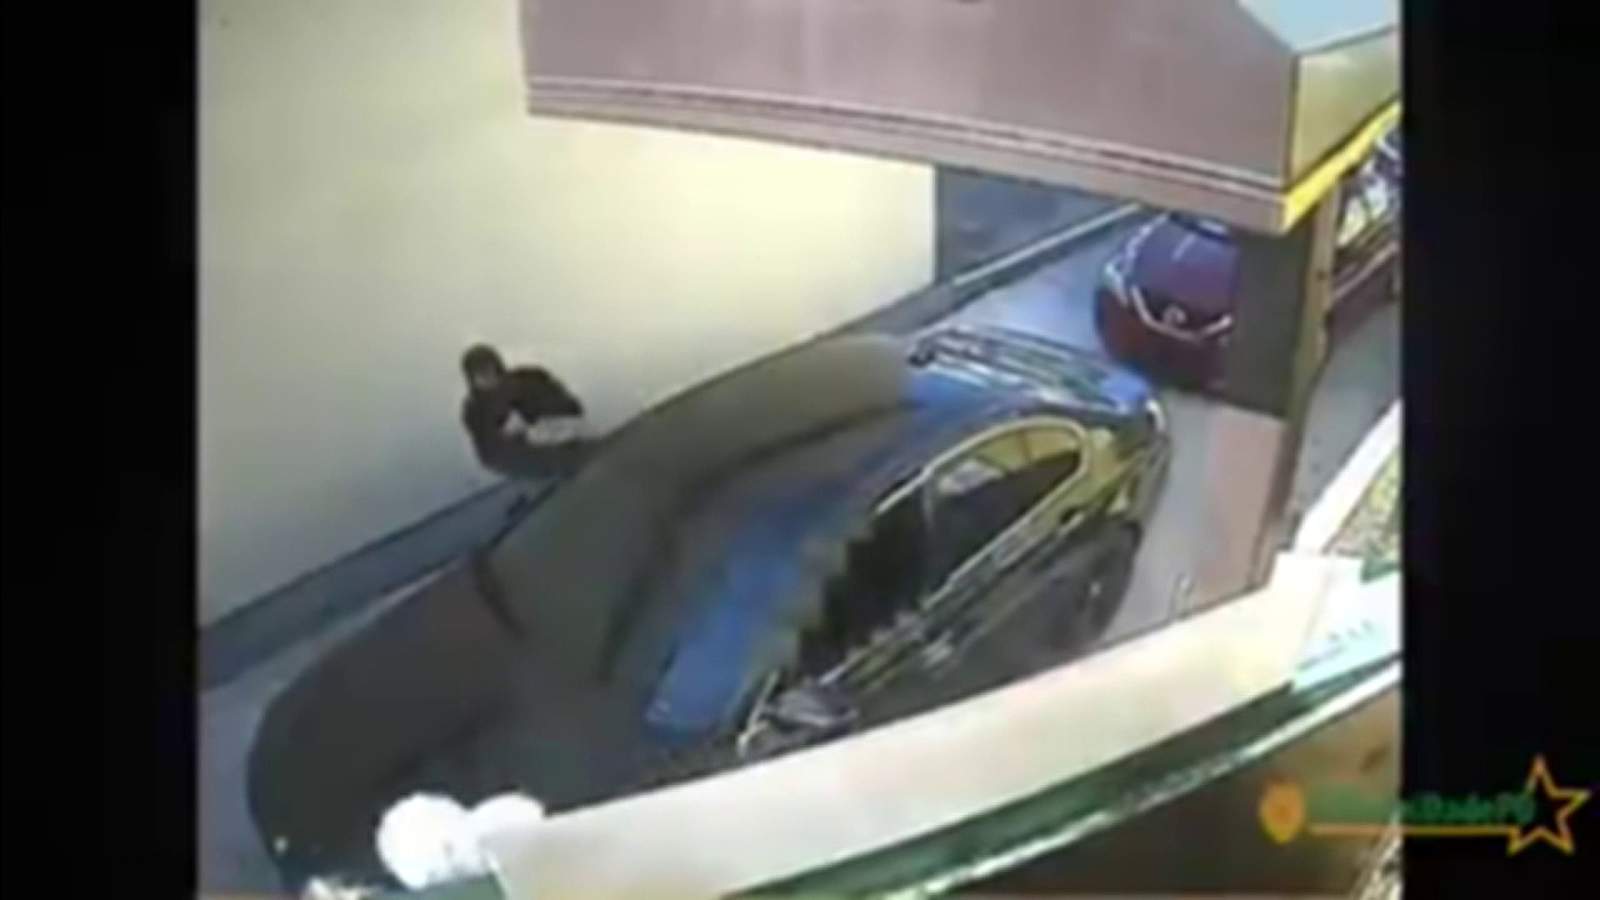 Cheeky thieves catch car ambush in Pollo Tropical drive-thru